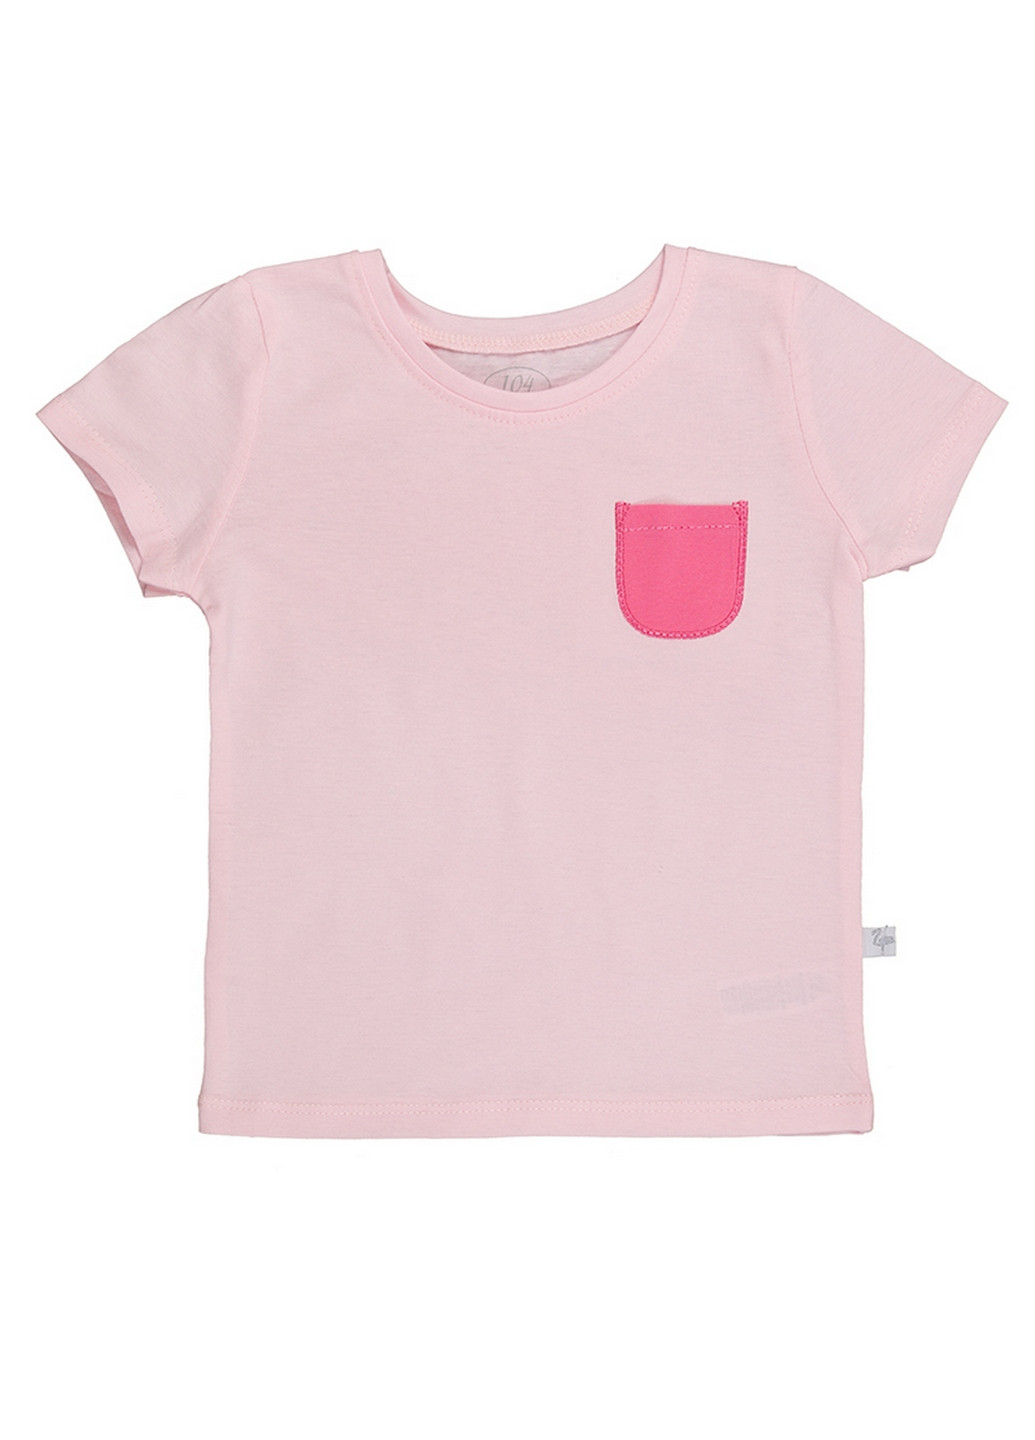 Светло-розовая летняя футболка для девочек Фламинго Текстиль